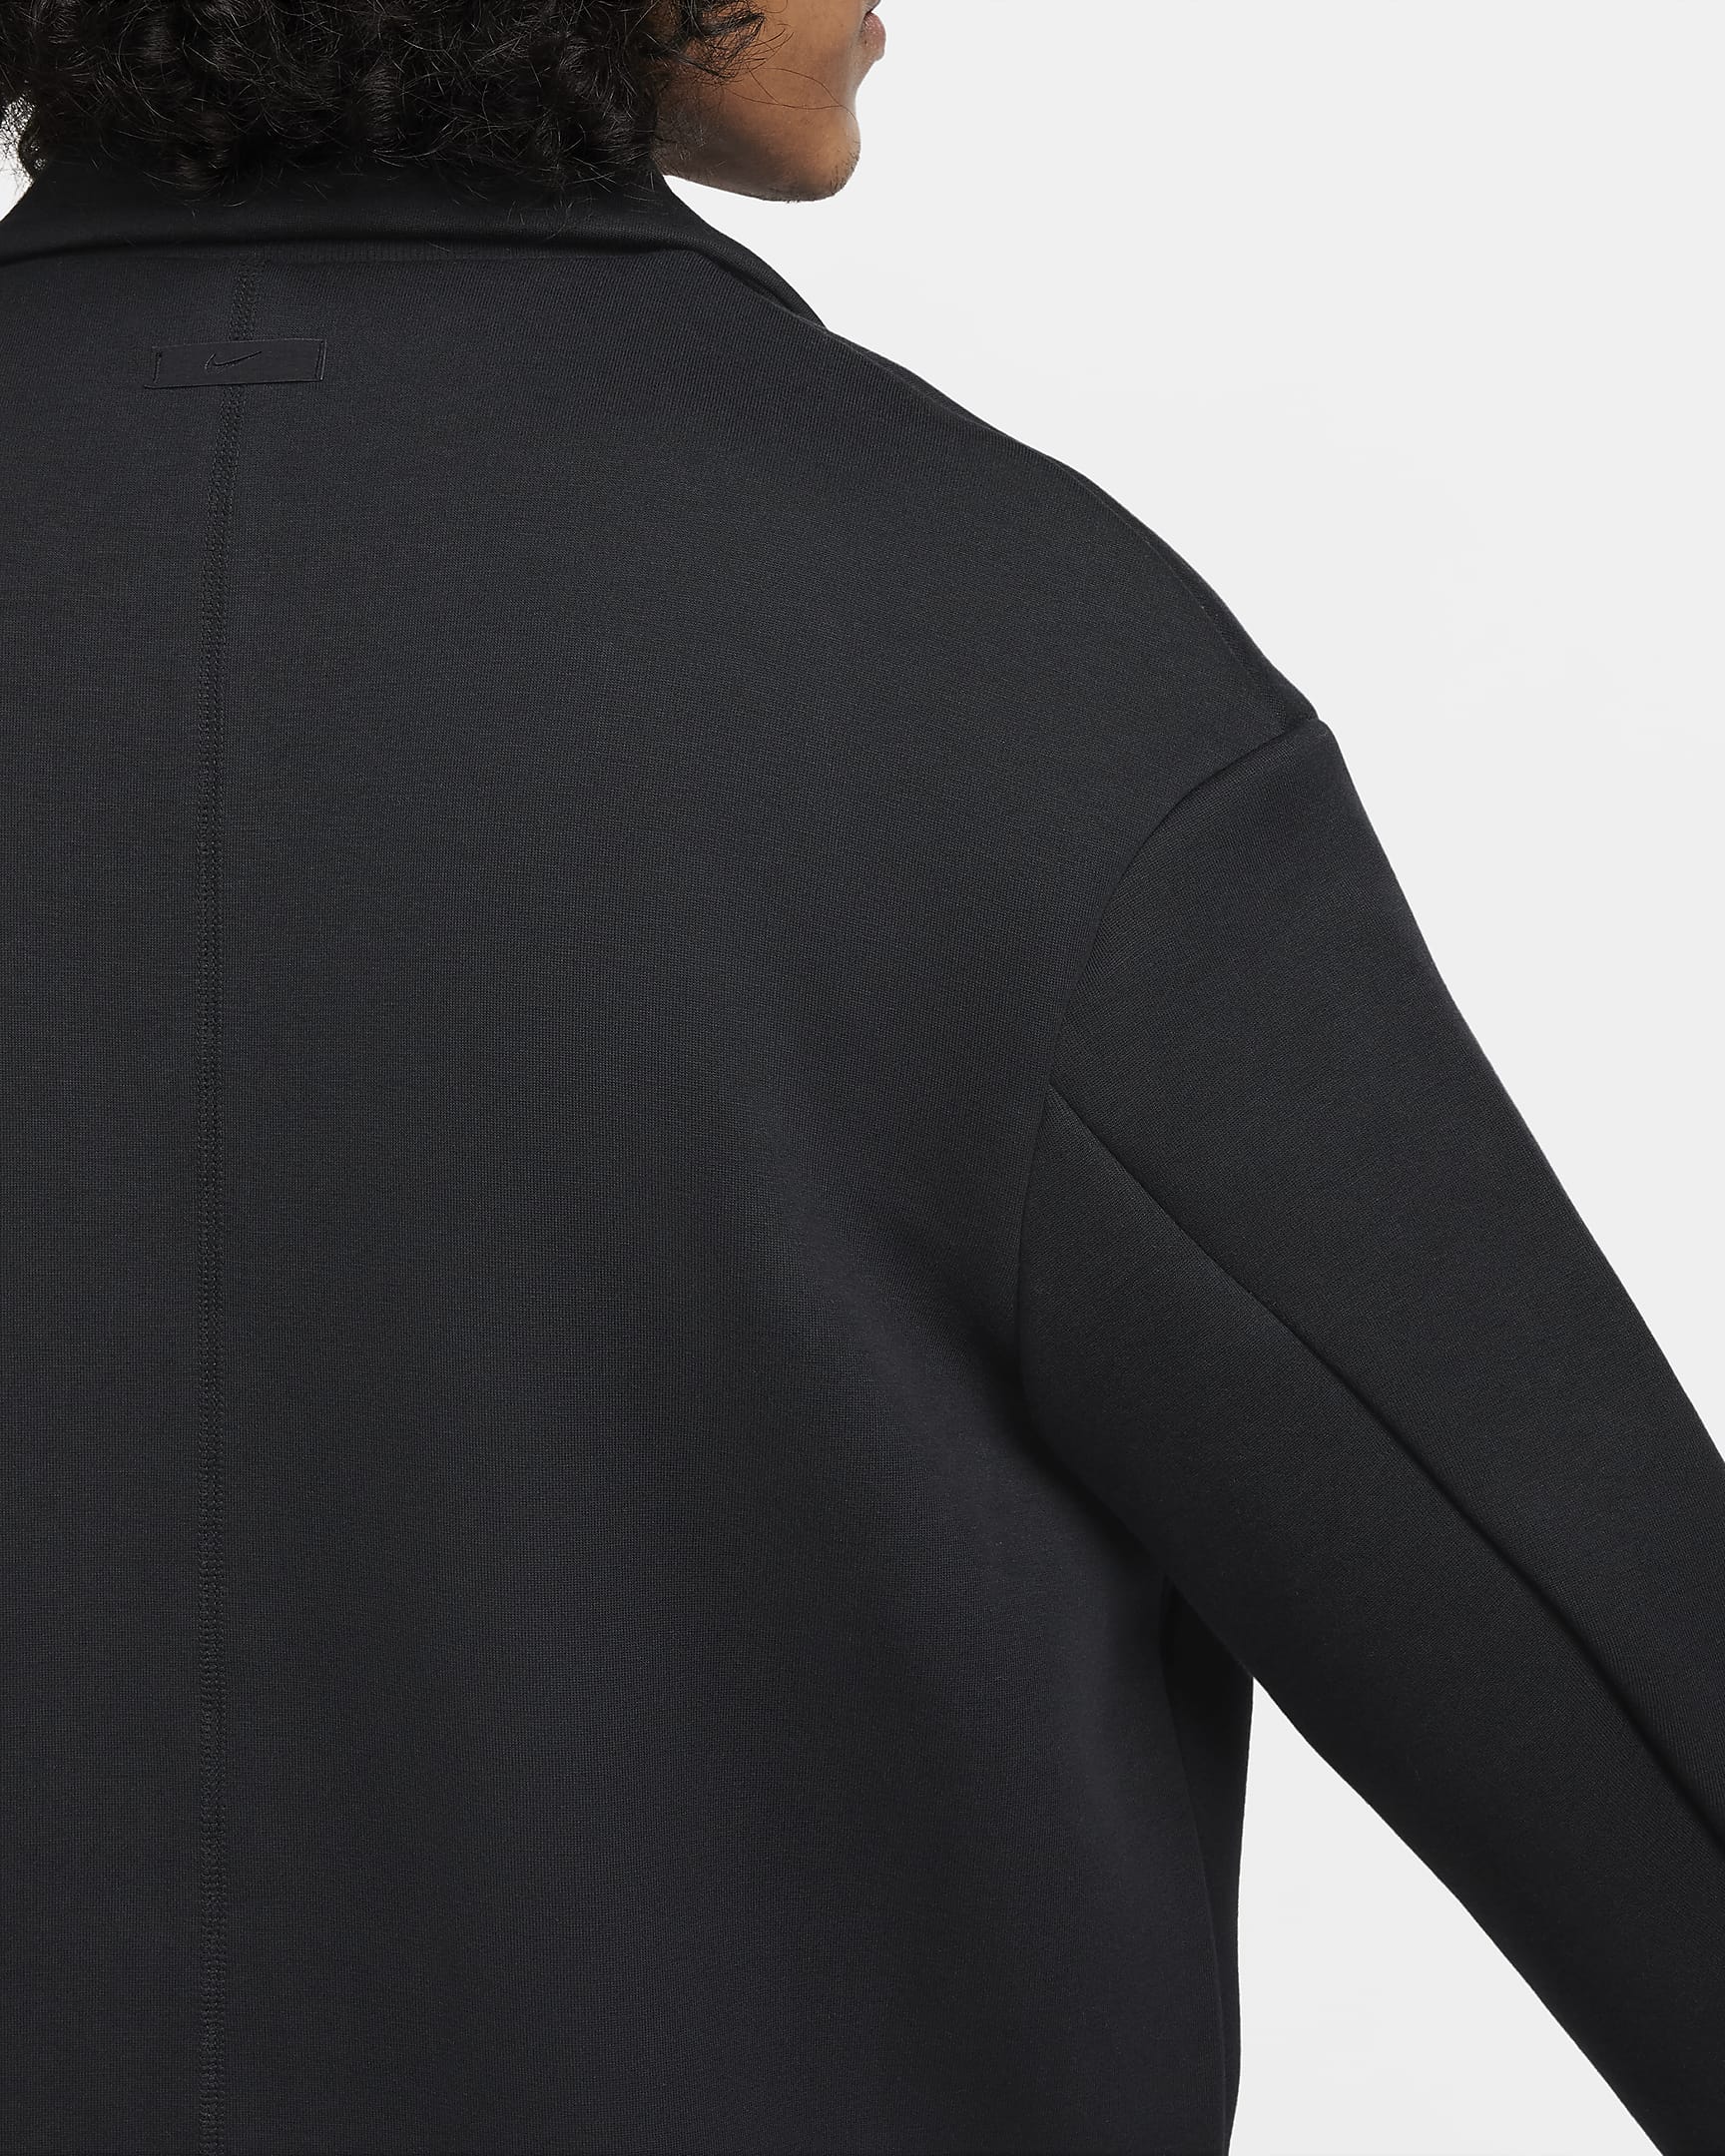 Nike Sportswear Tech Fleece Reimagined Men's Loose Fit Trench Coat ...